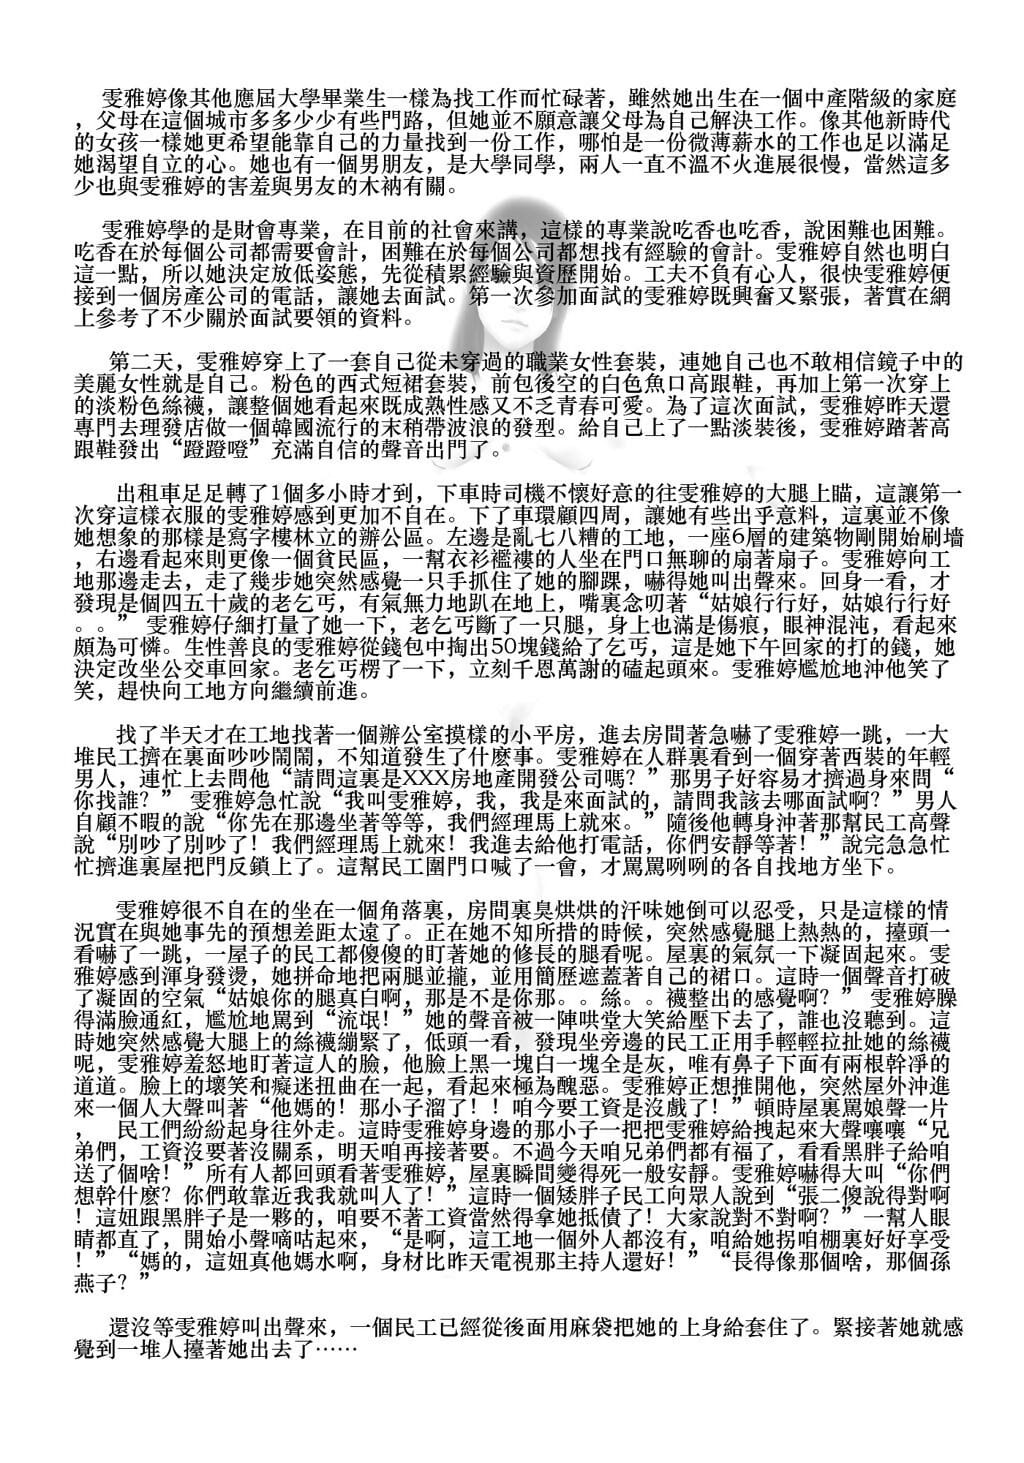 雯雅婷1 + 2 page 1